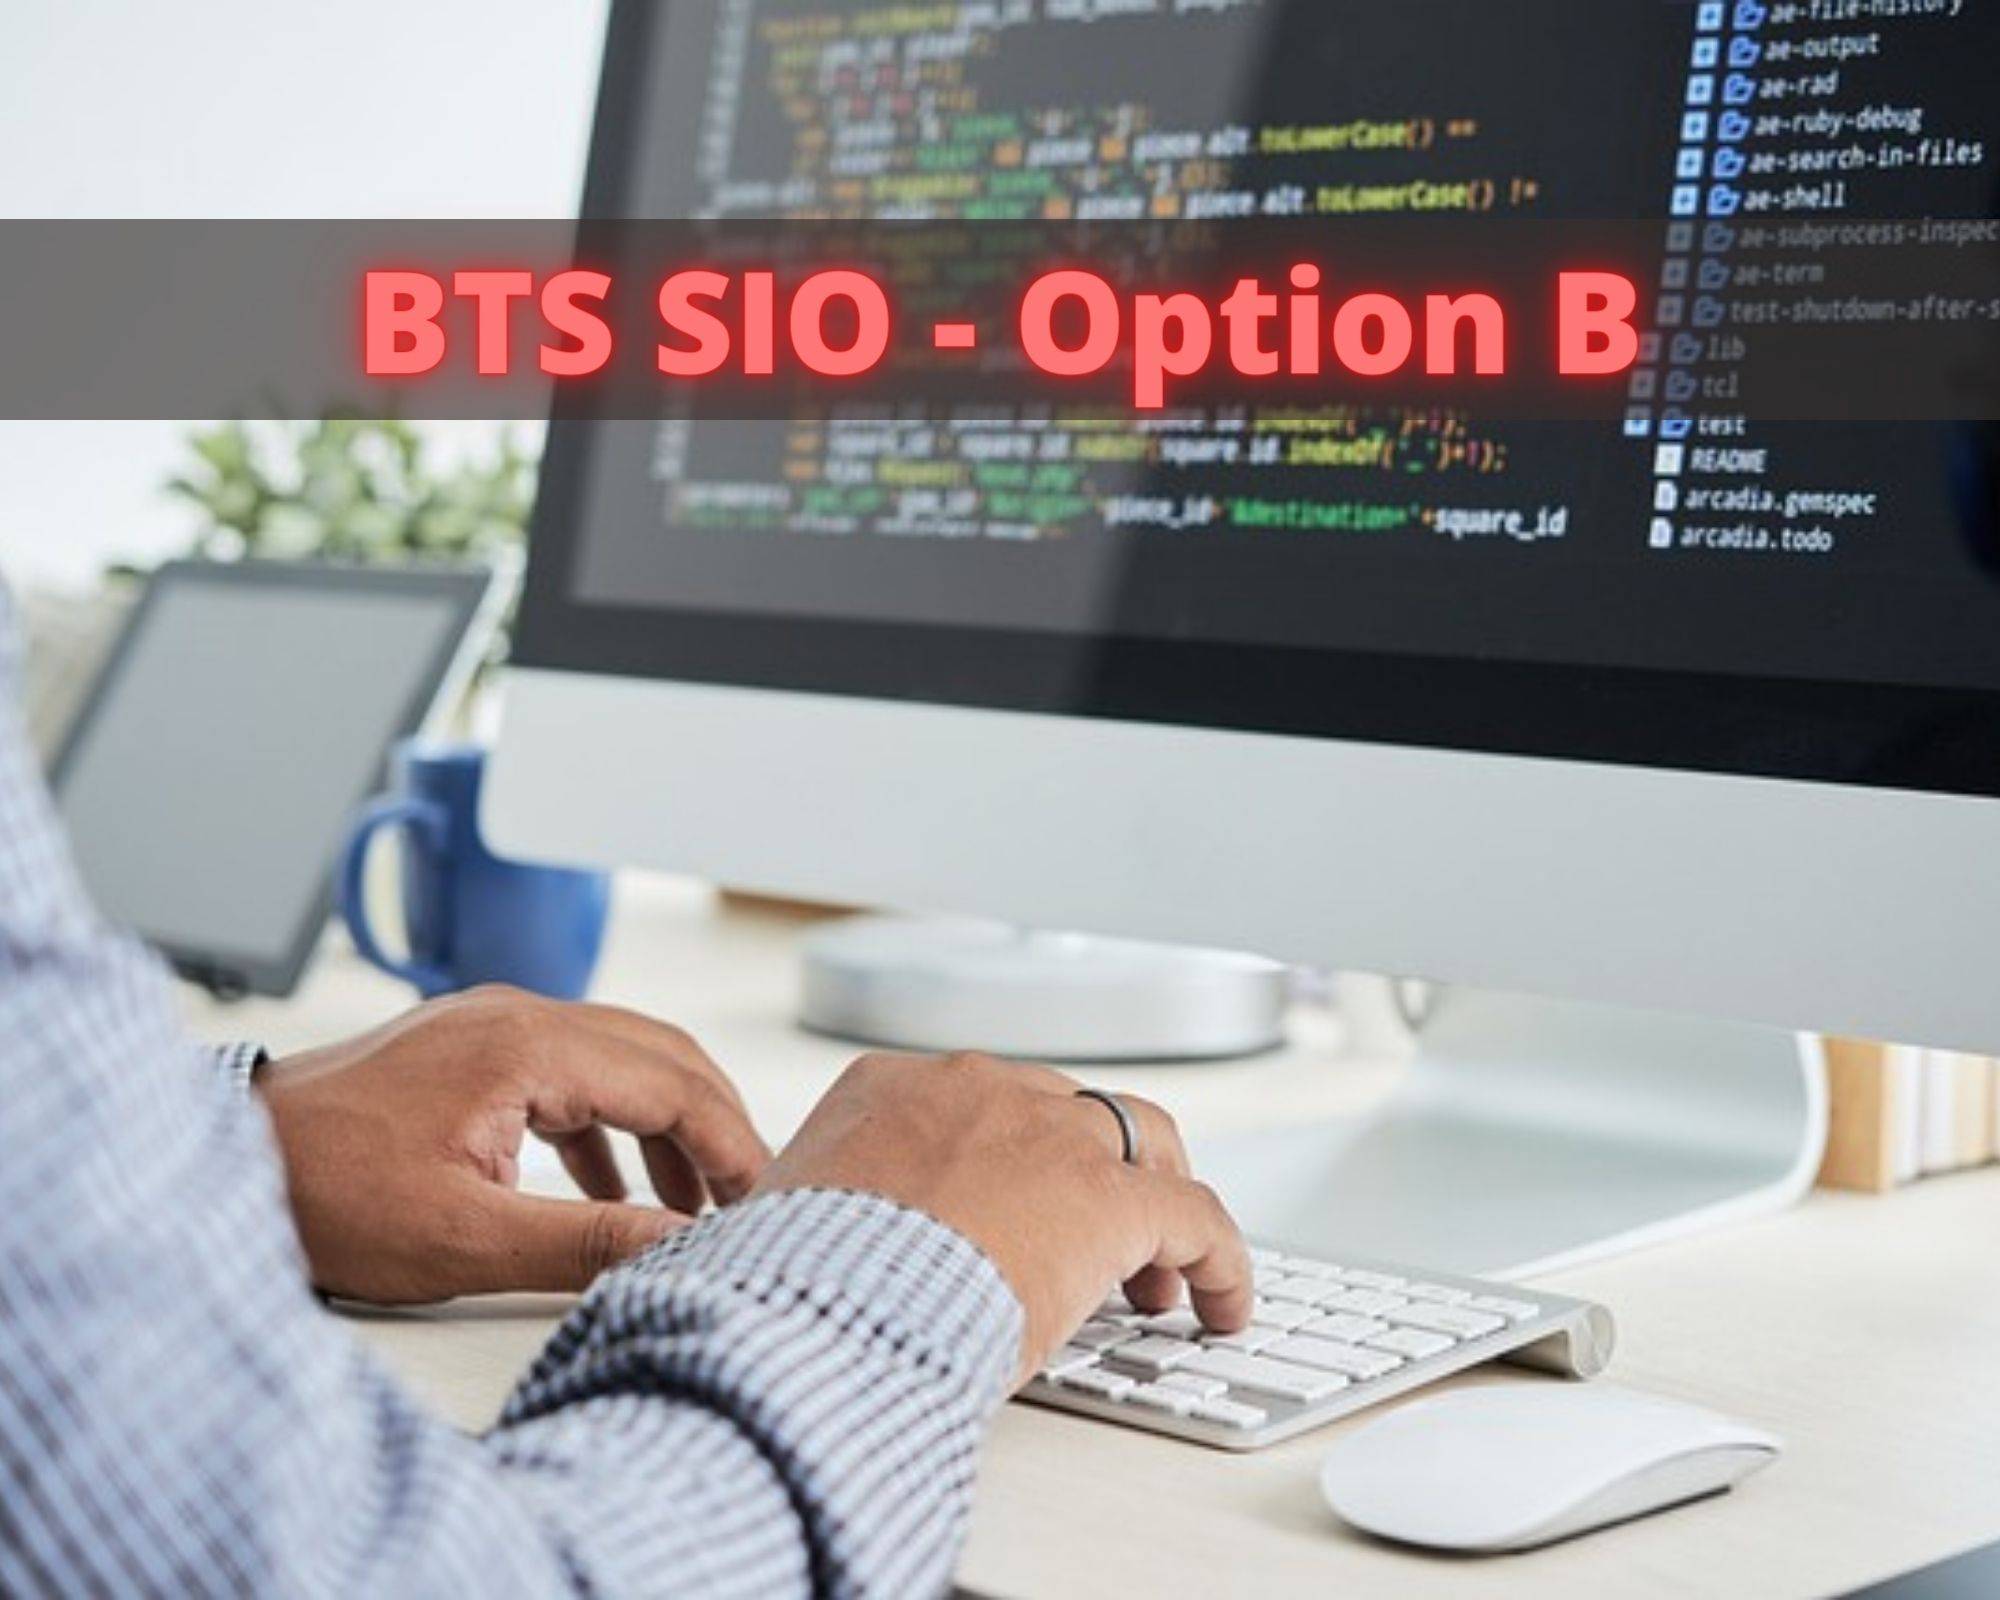  BTS Services Informatiques aux Organisations Option B Solutions logicielles et applications métiers